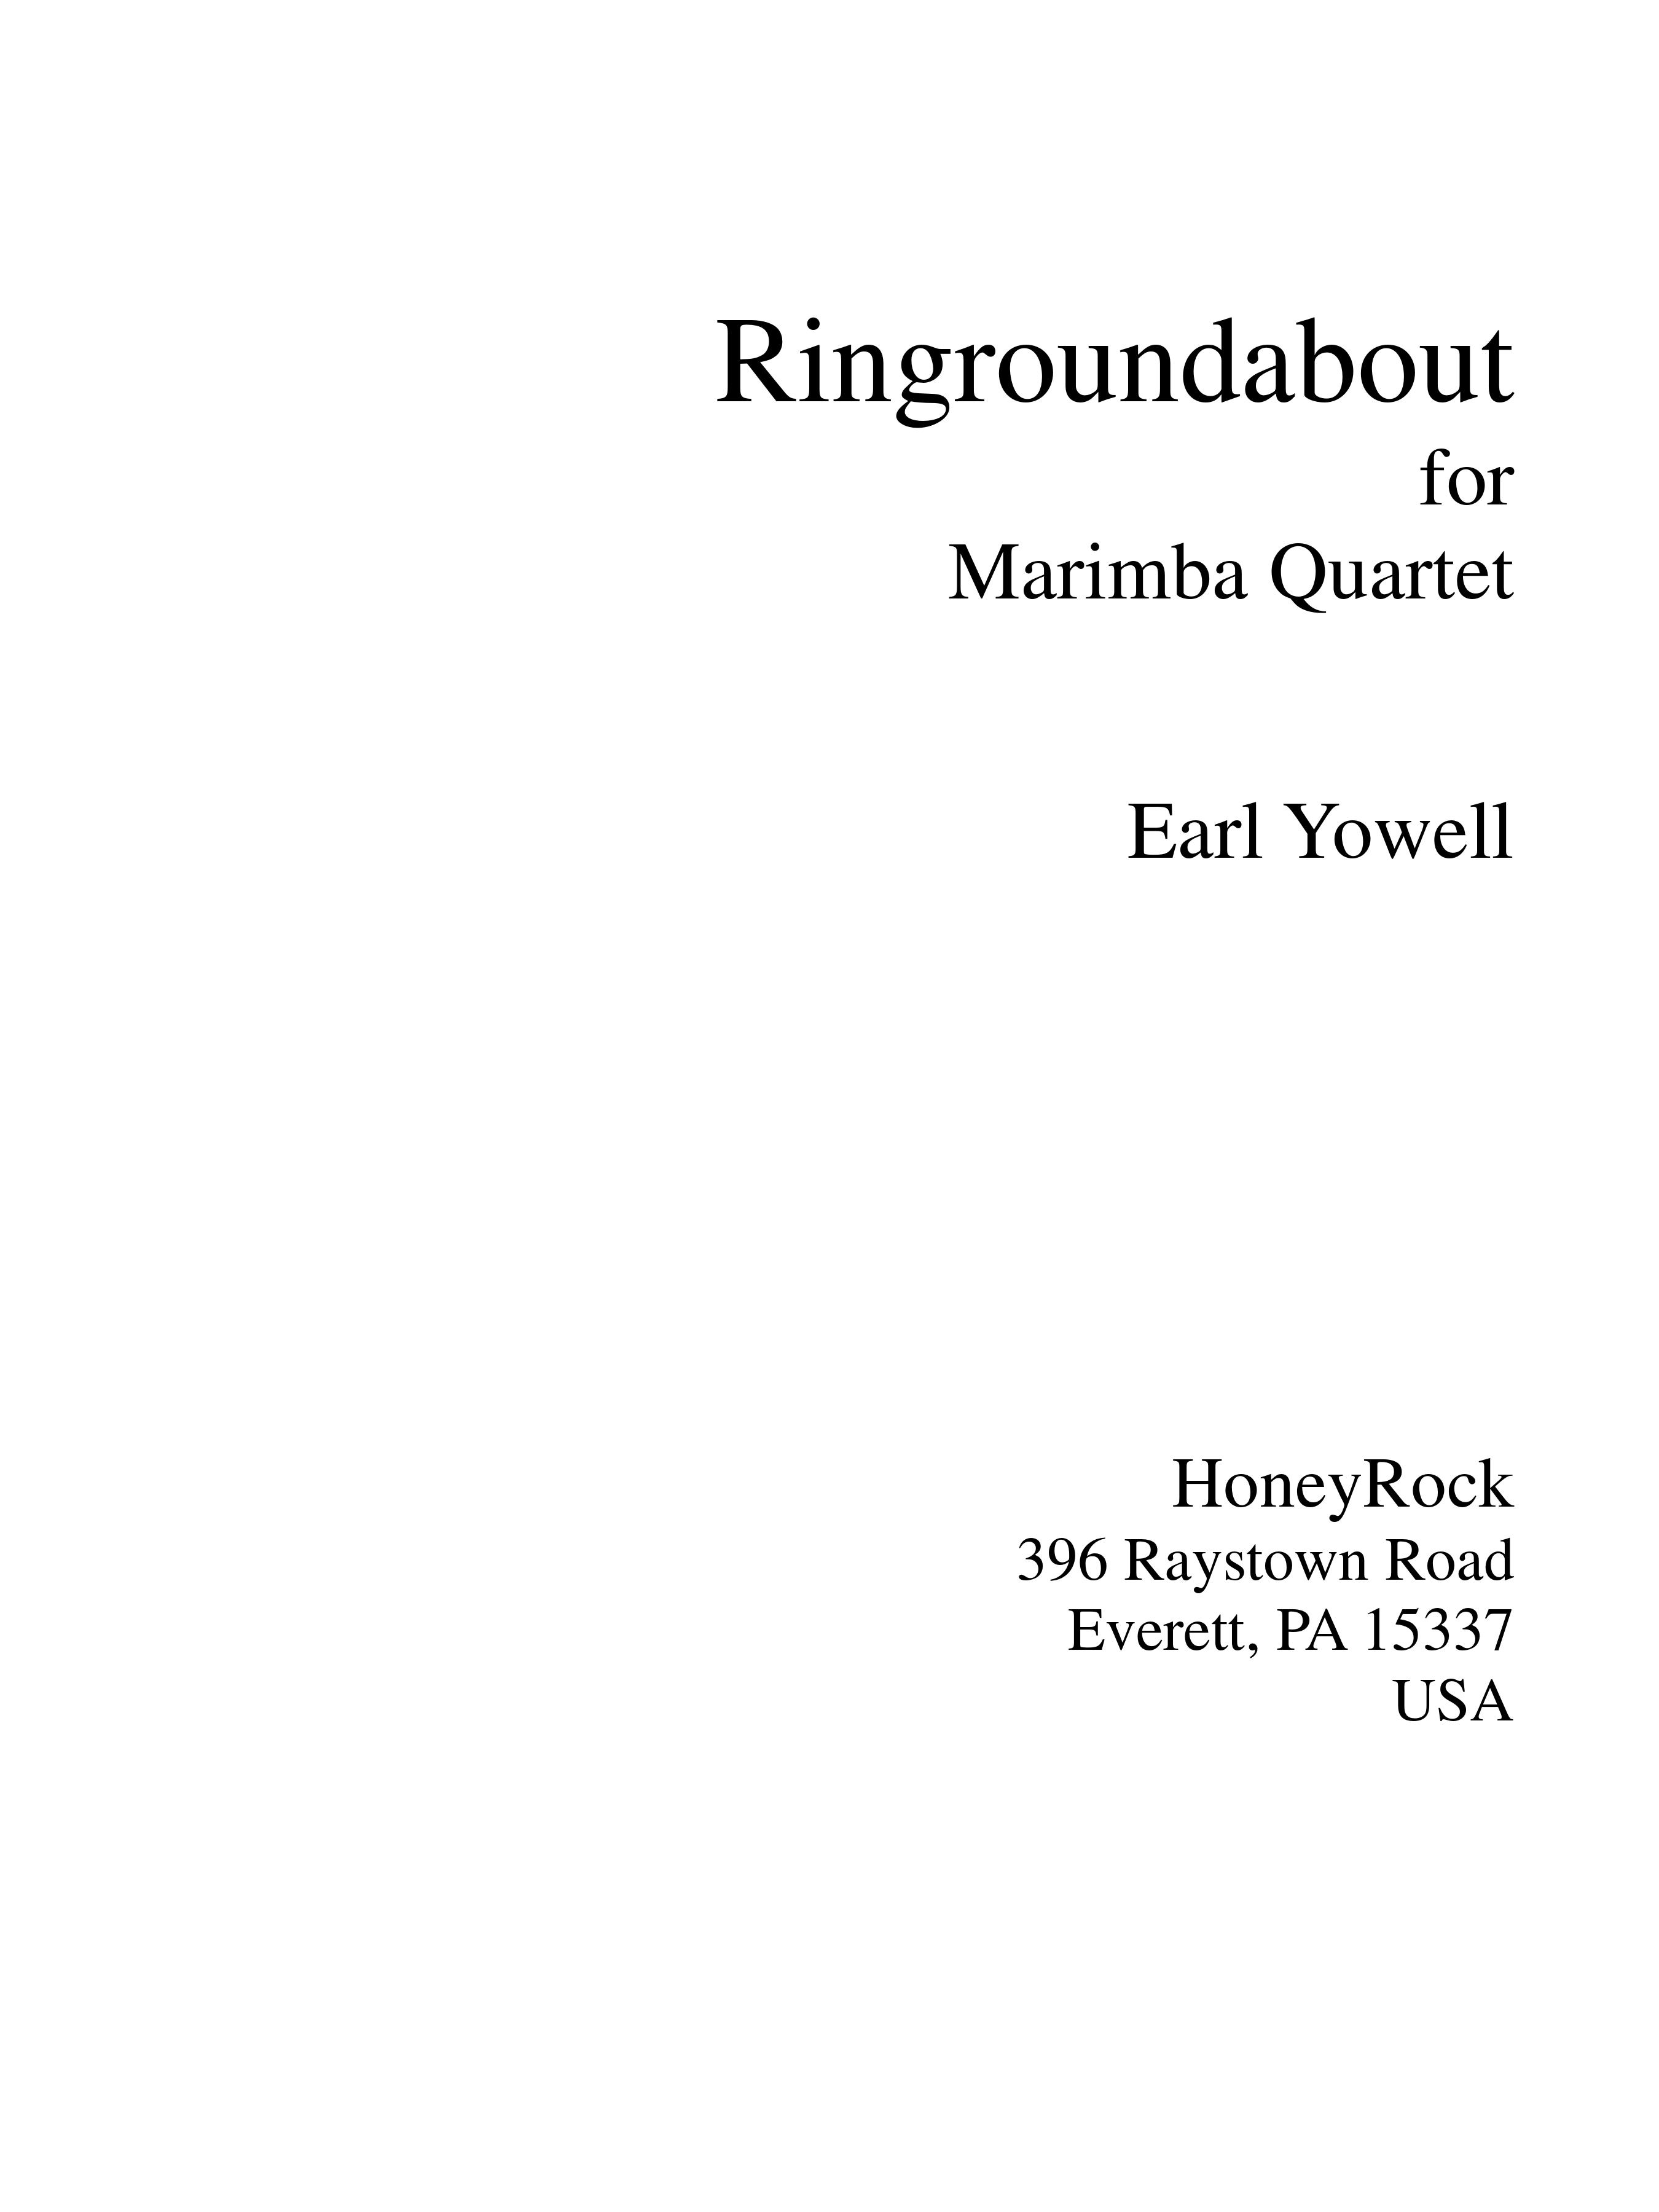 Ringroundabout for Marimba Quartet